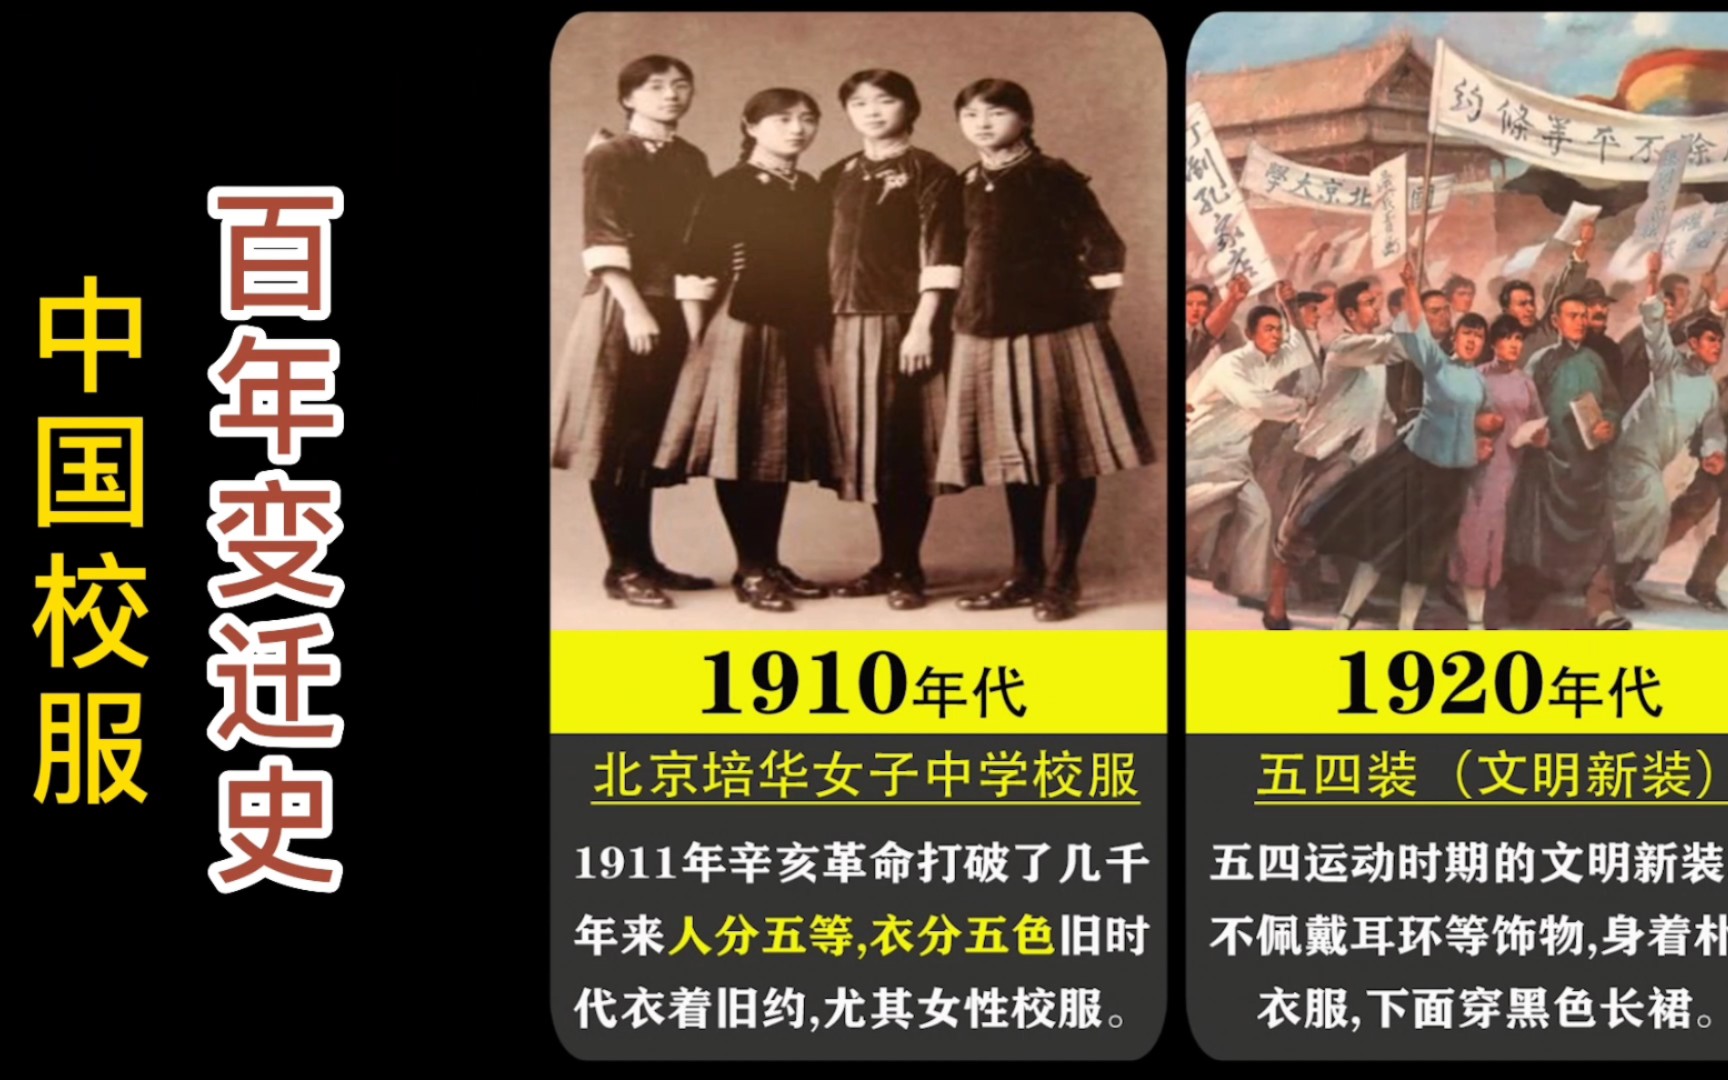 中国校服百年变迁历史,校服款式变化也见证了时代的审美